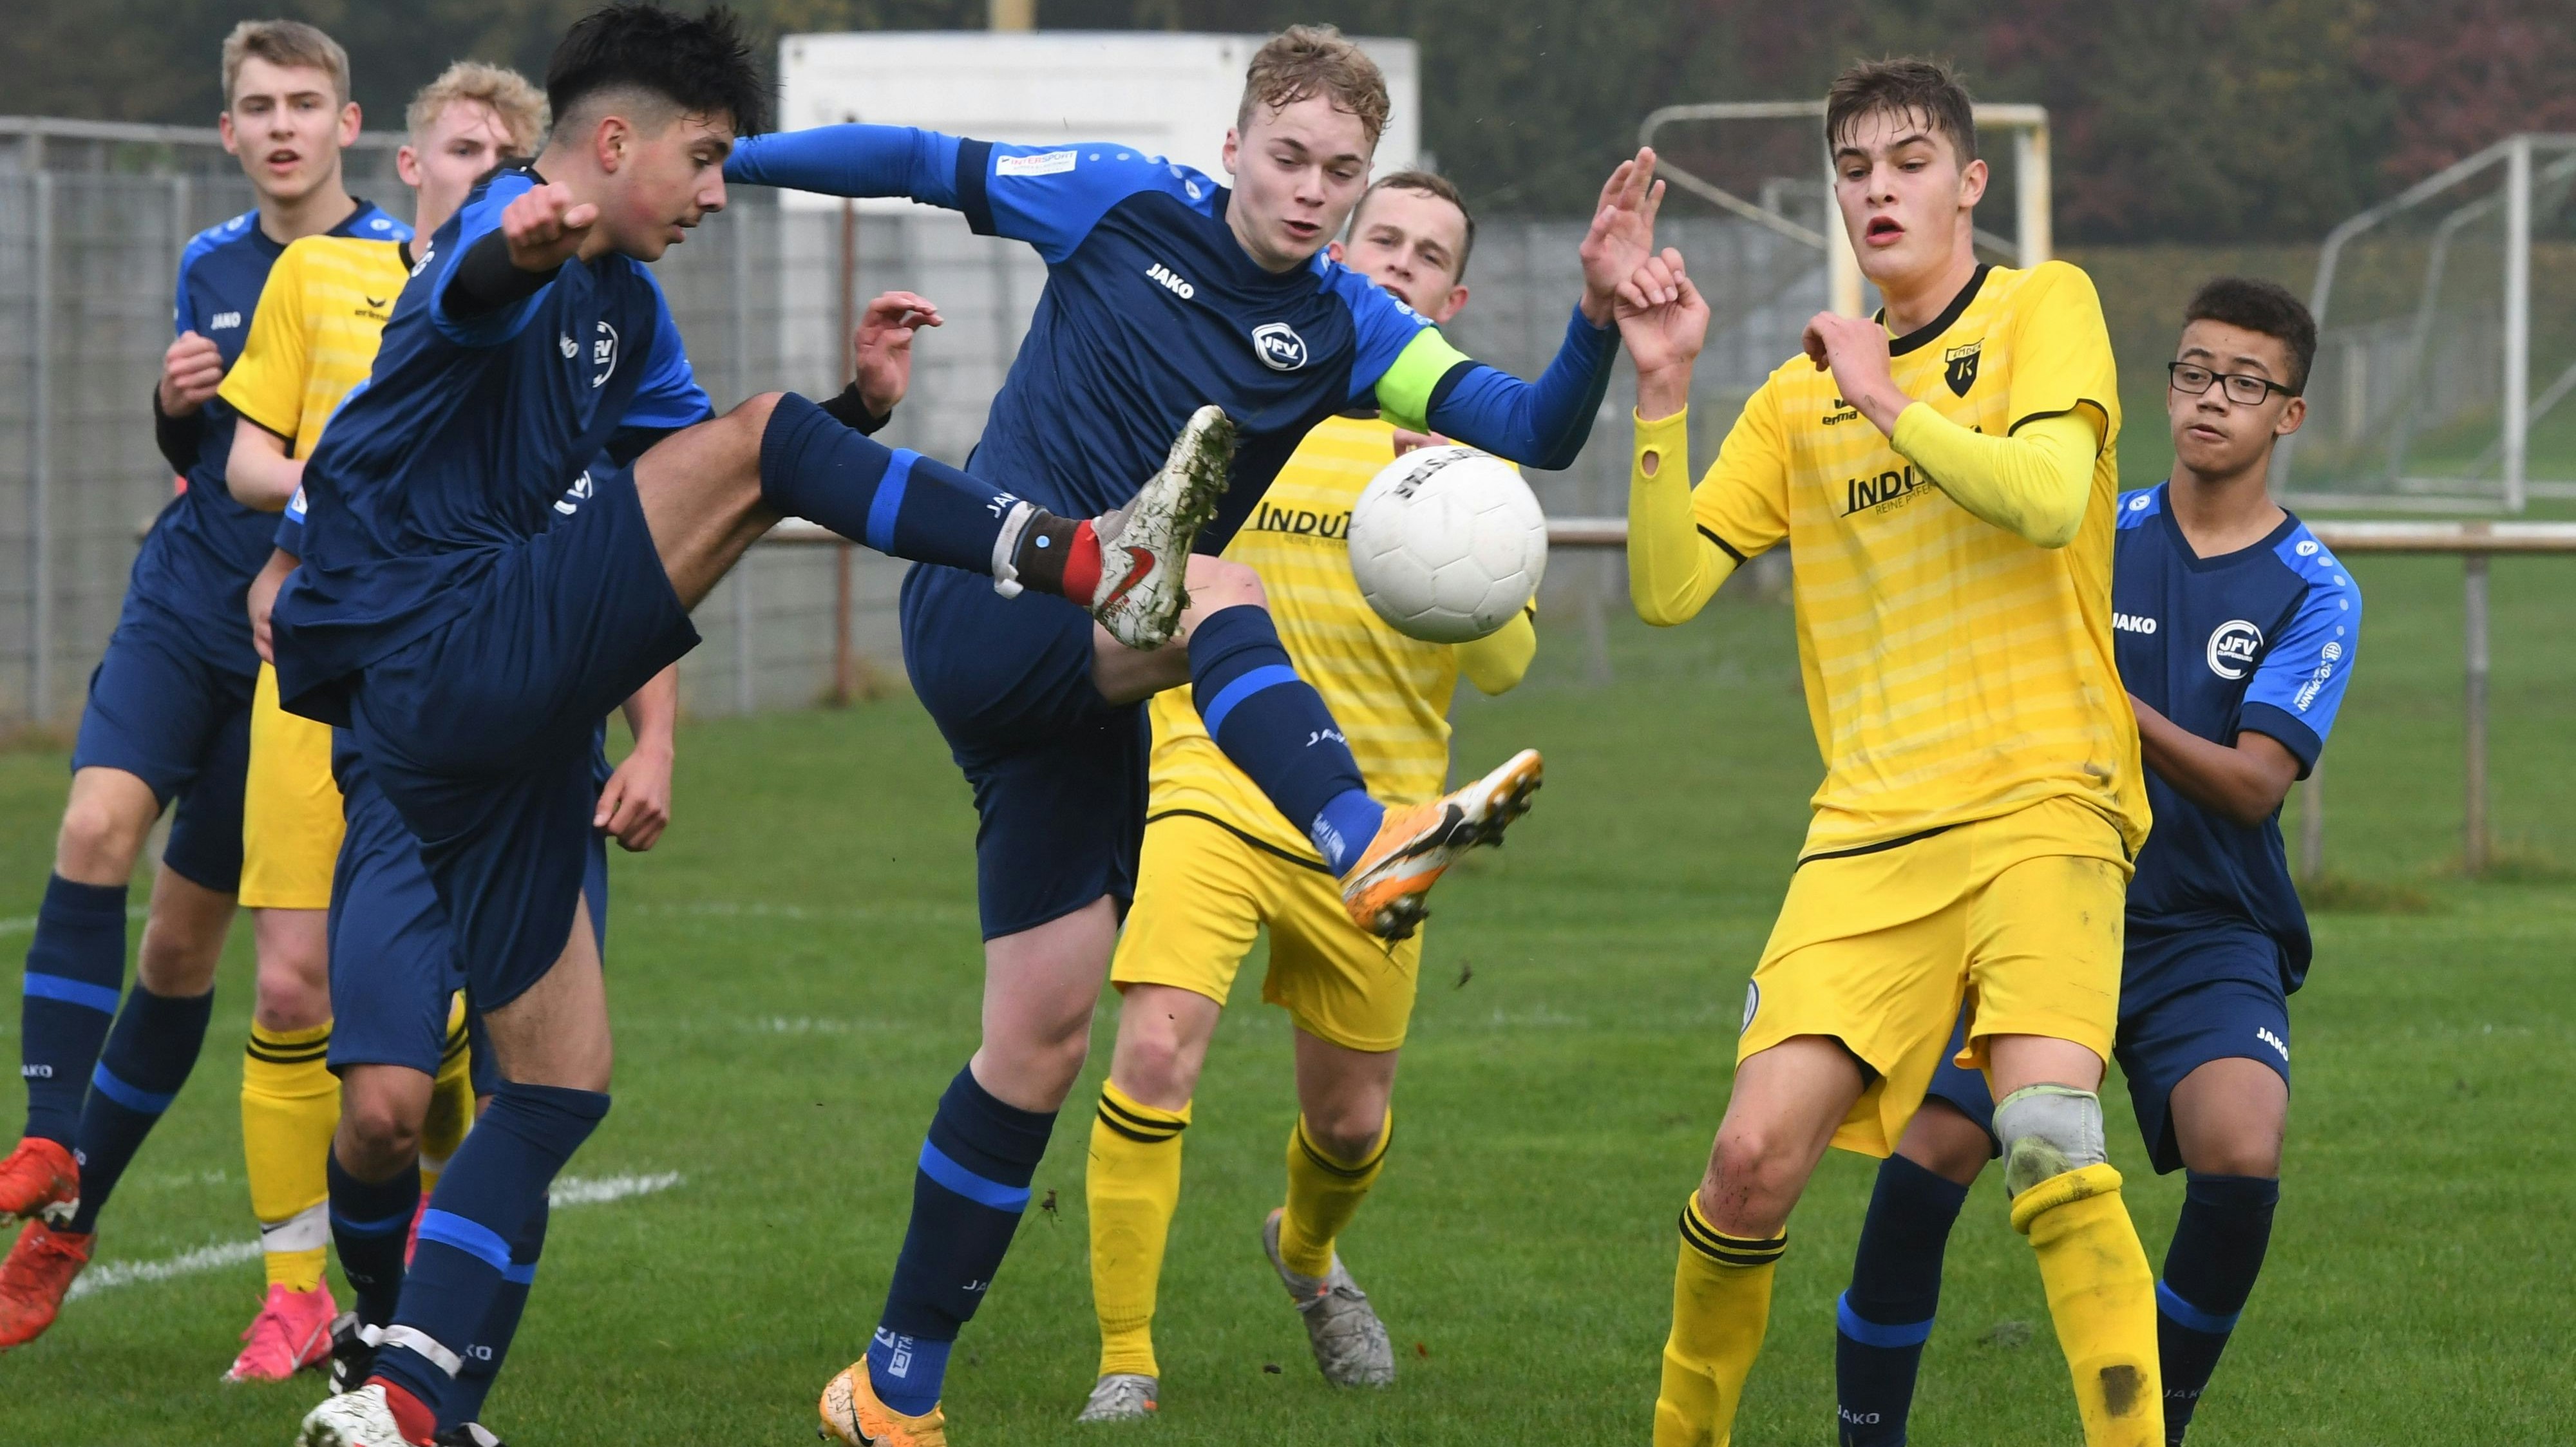 Klasse Partie: Cloppenburgs U17-Fußballer (blaue Trikots) kamen im Heimspiel in der Niedersachsenliga gegen Kickers Emden zu einem verdienten 4:1-Erfolg. Foto: Wulfers